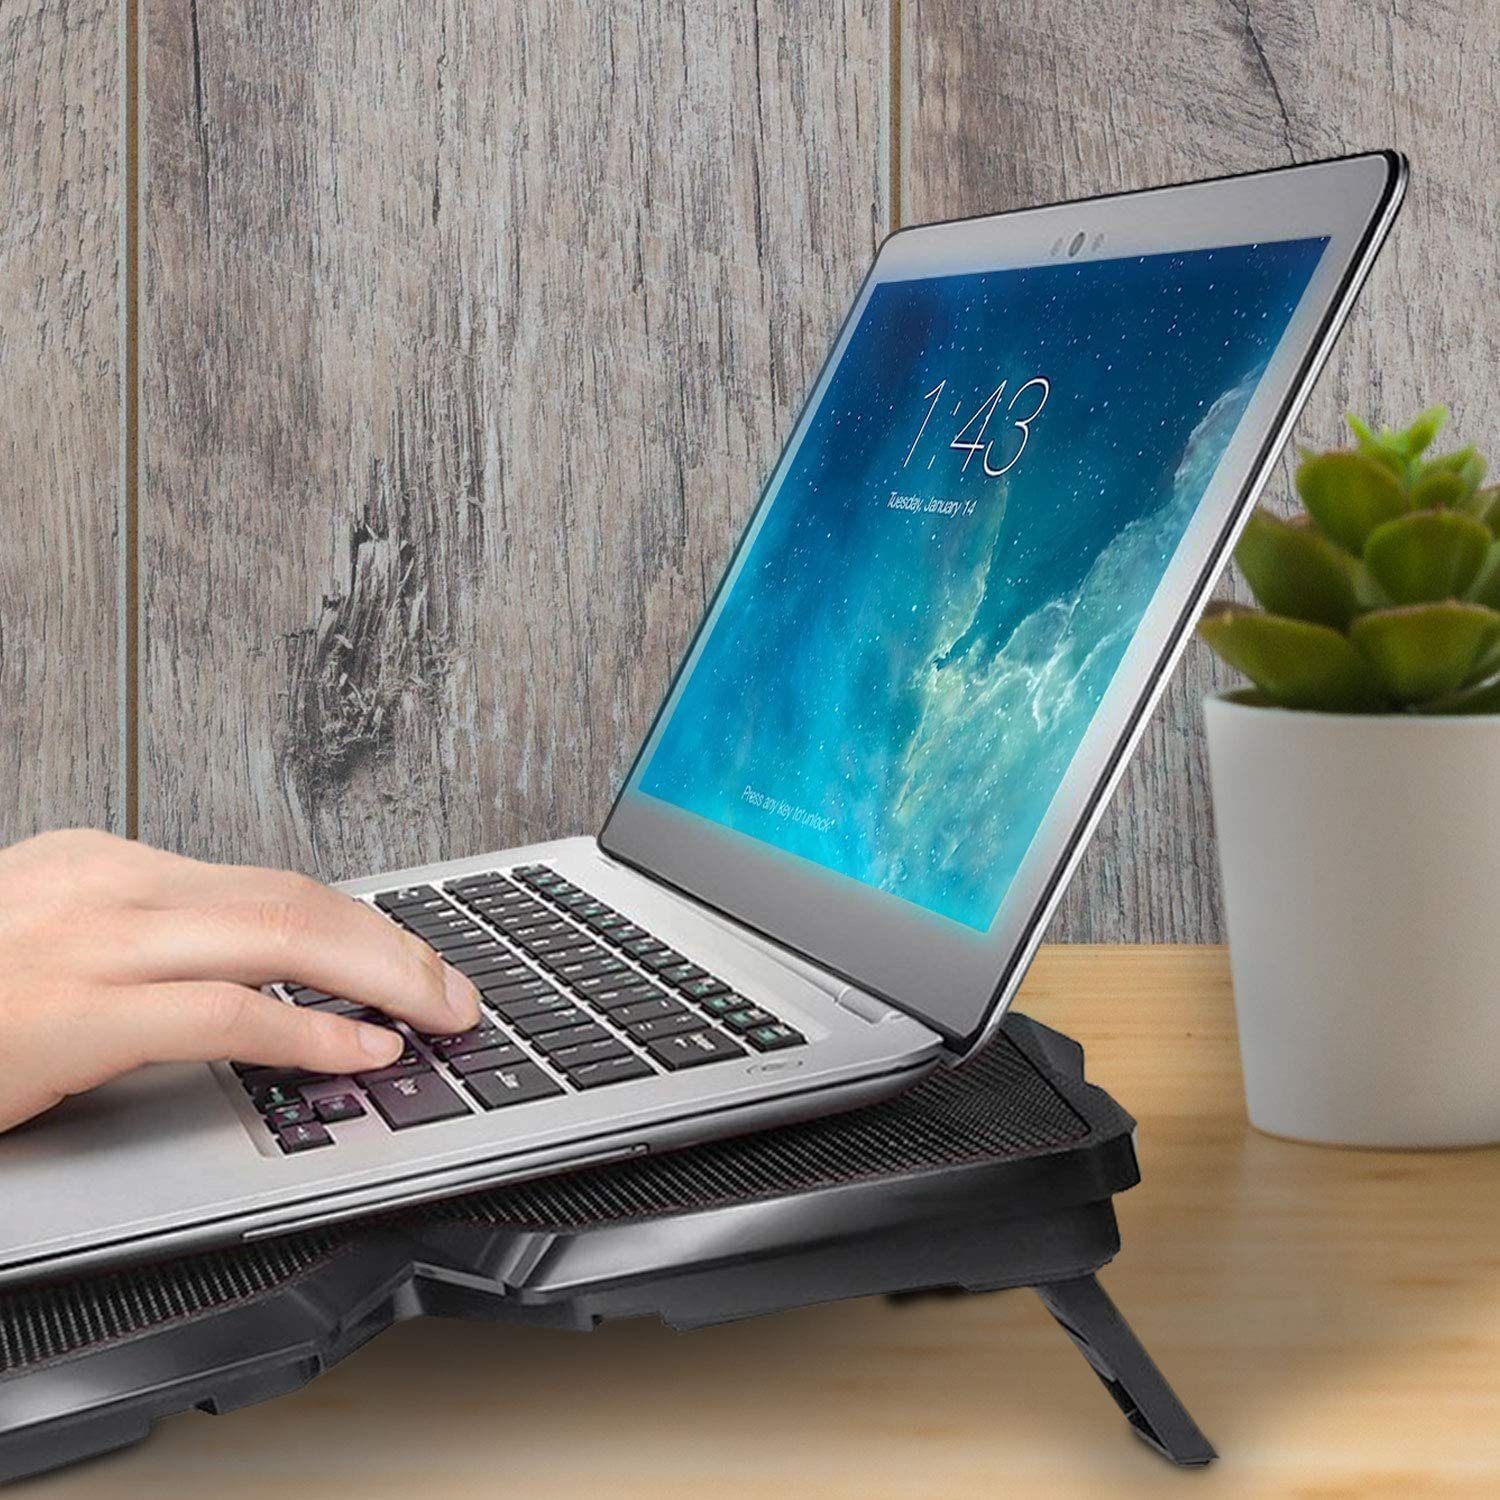 KLIM Notebook-Kühler Wind, Laptop-Kühlpad – schnelle leistungsstärkste Kühlventilator Cyan der